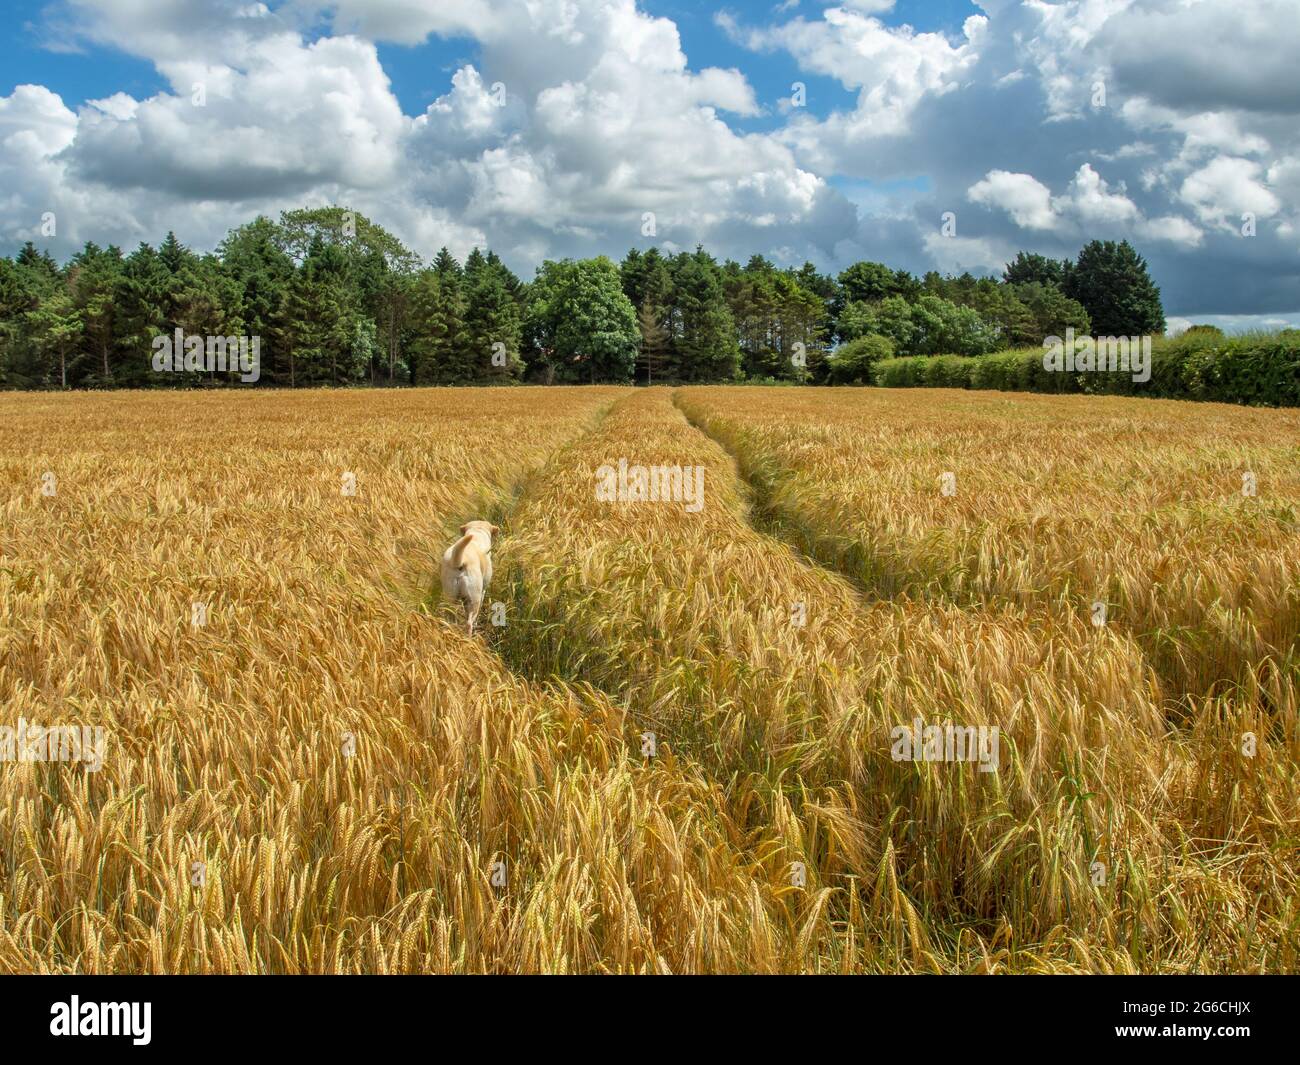 Veew attraverso un campo di grano giallo o orzo agli alberi in lontananza e un cane in primo piano in una giornata di sole. Foto Stock